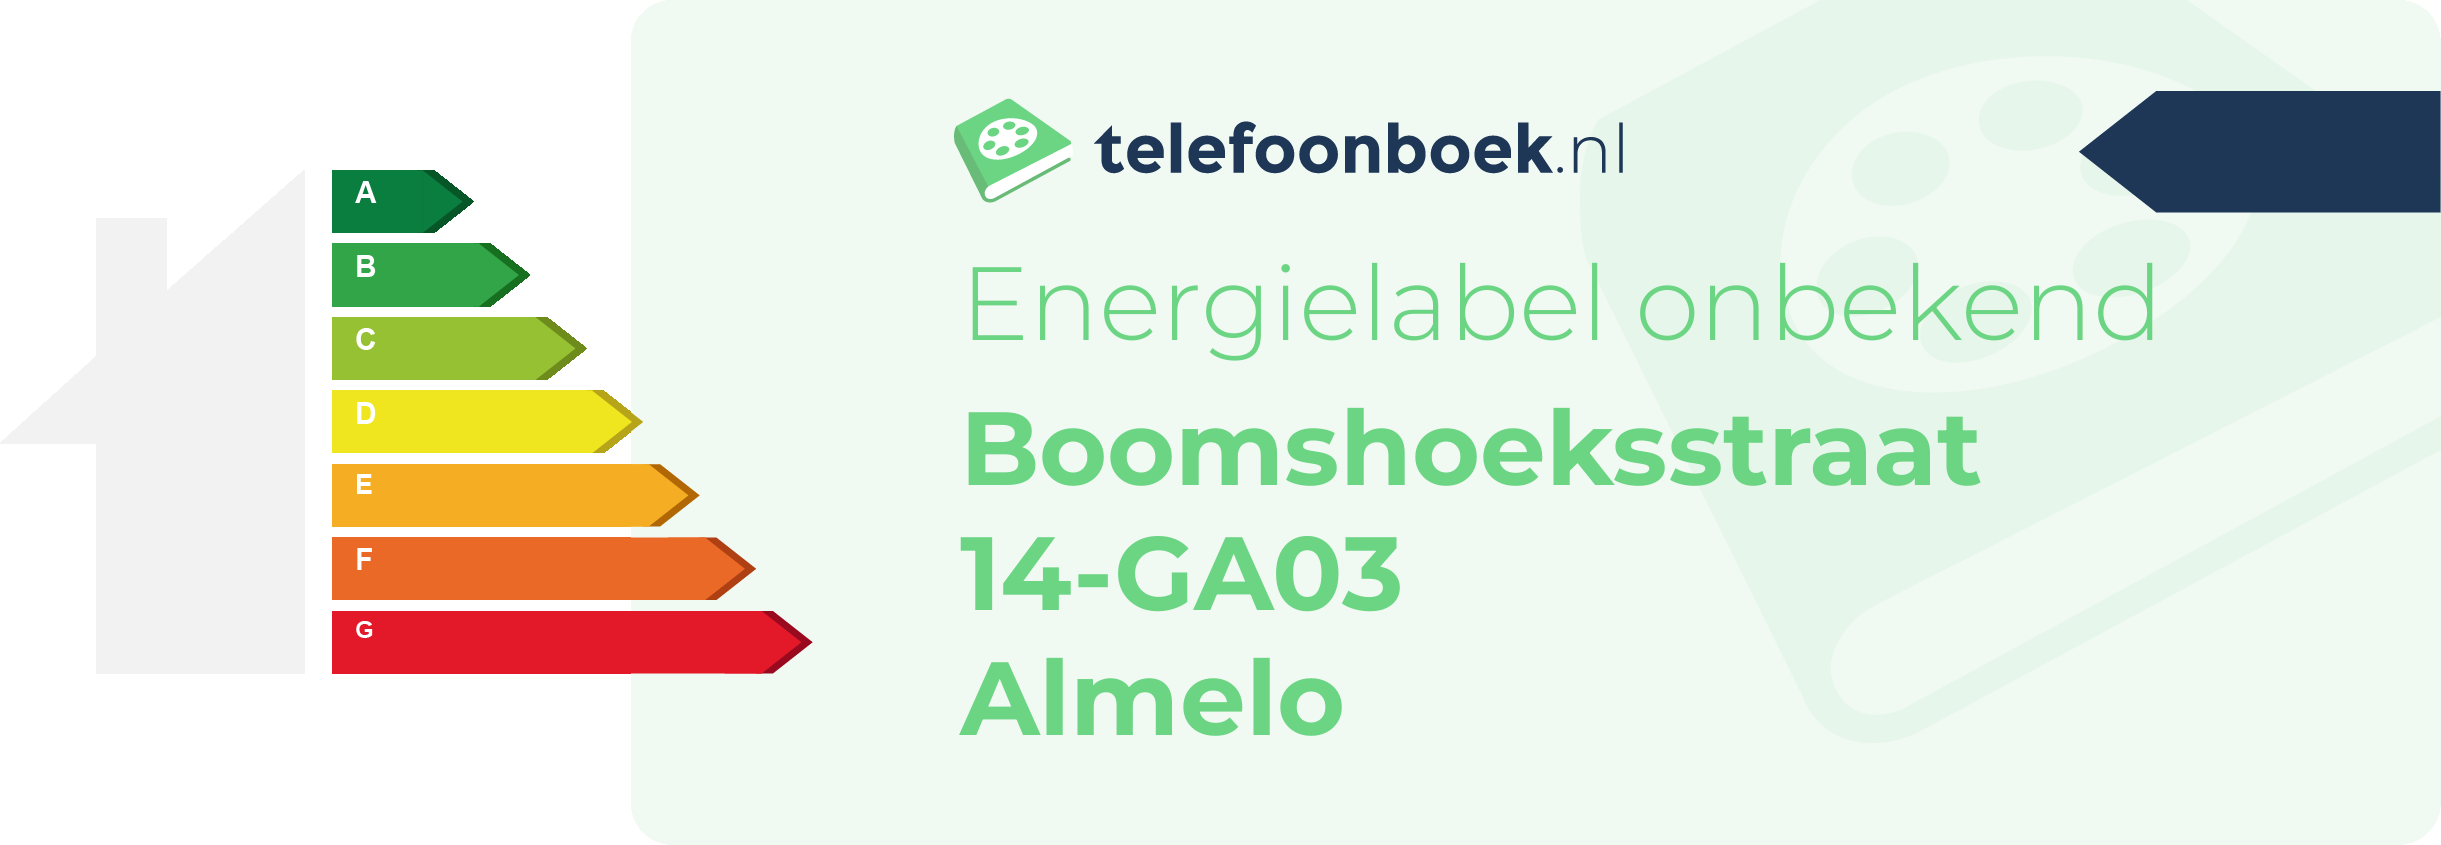 Energielabel Boomshoeksstraat 14-GA03 Almelo